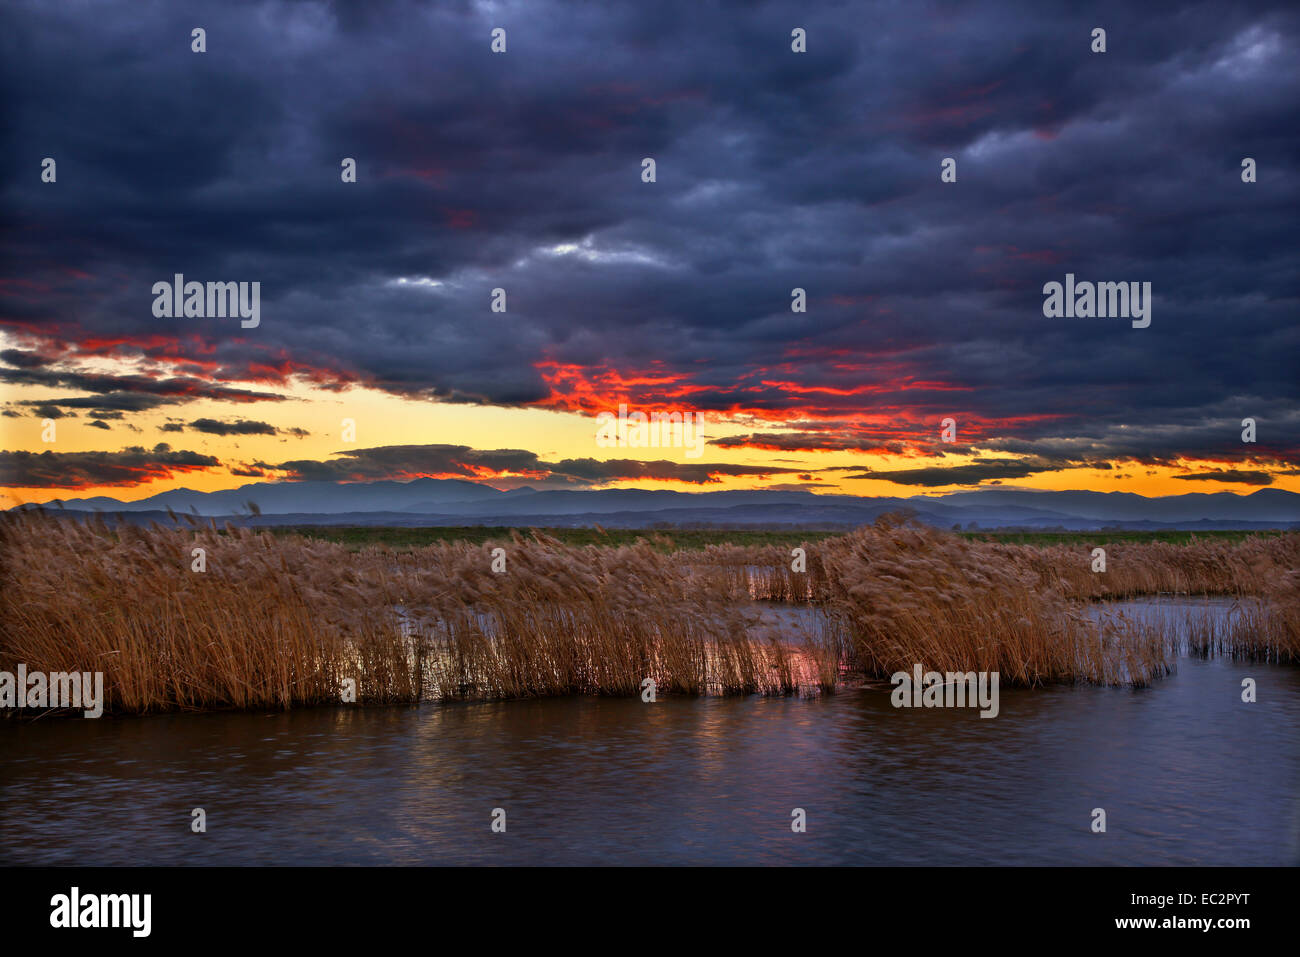 Sunset  at the Delta of Aliakmonas river, Pieria - Imathia, Macedonia, Greece. Stock Photo